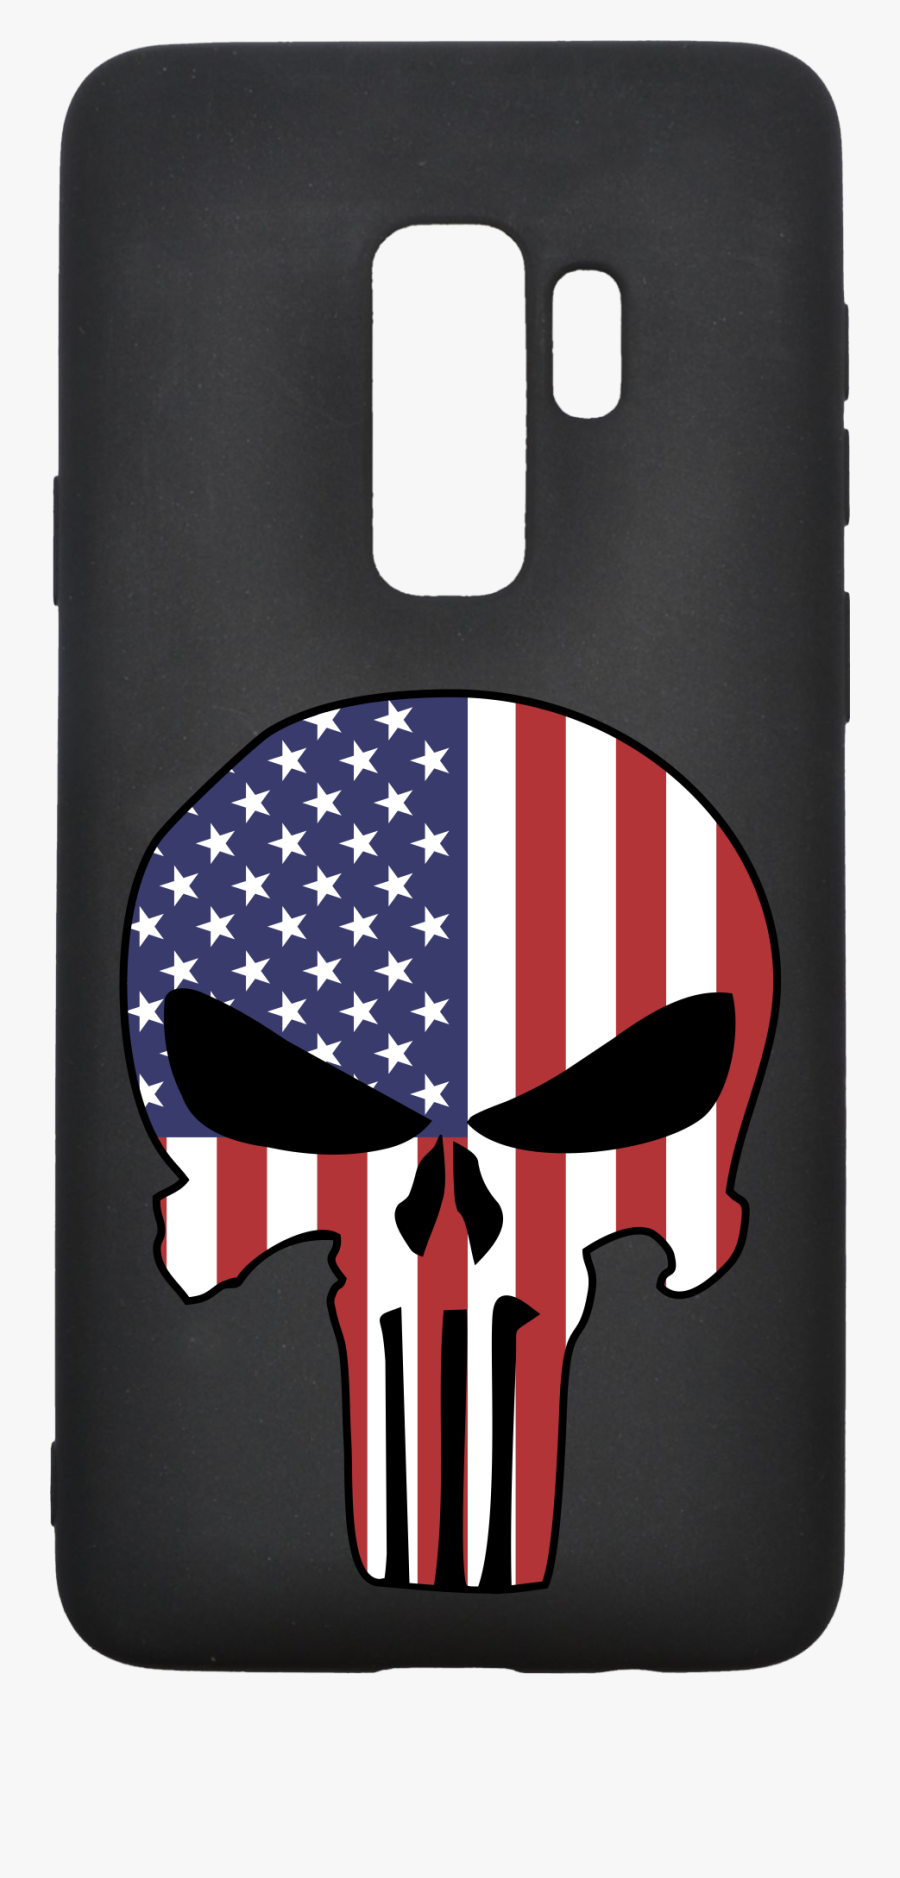 Transparent Punisher Skull Png - American Flag Punisher Skull, Transparent Clipart